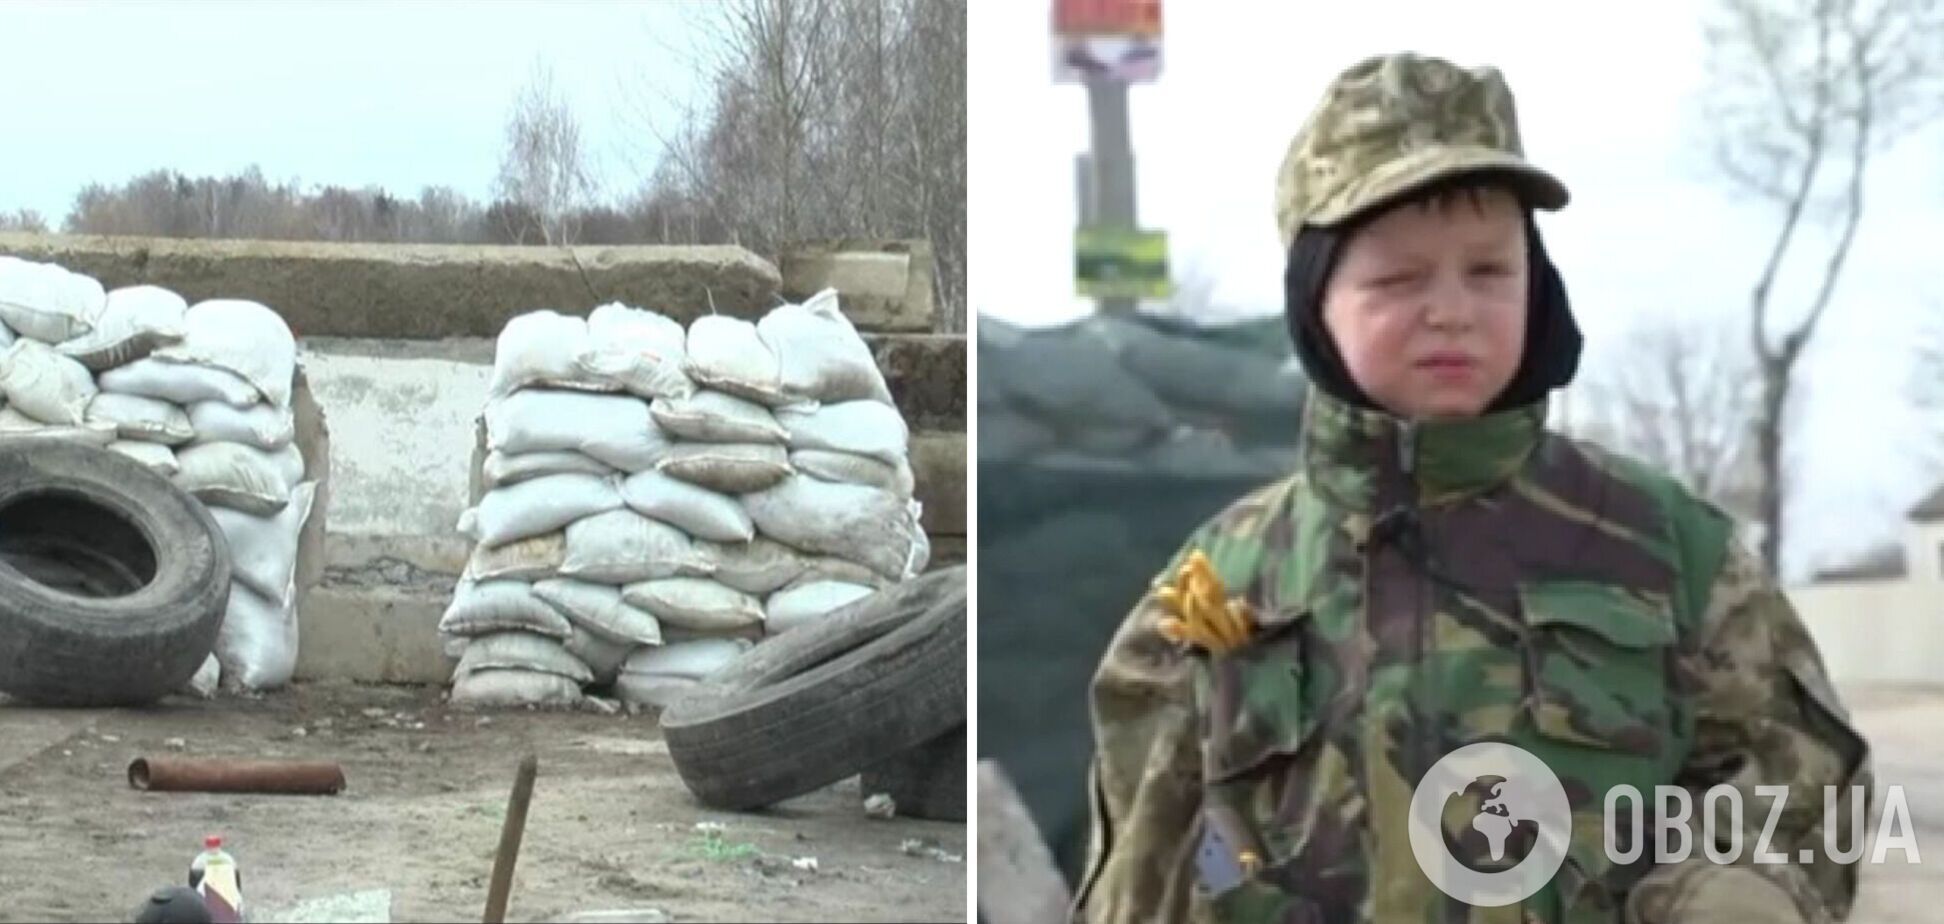 'Смелость не имеет возраста': шестилетний мальчик помогает пограничникам на блокпосту под Харьковом. Видео